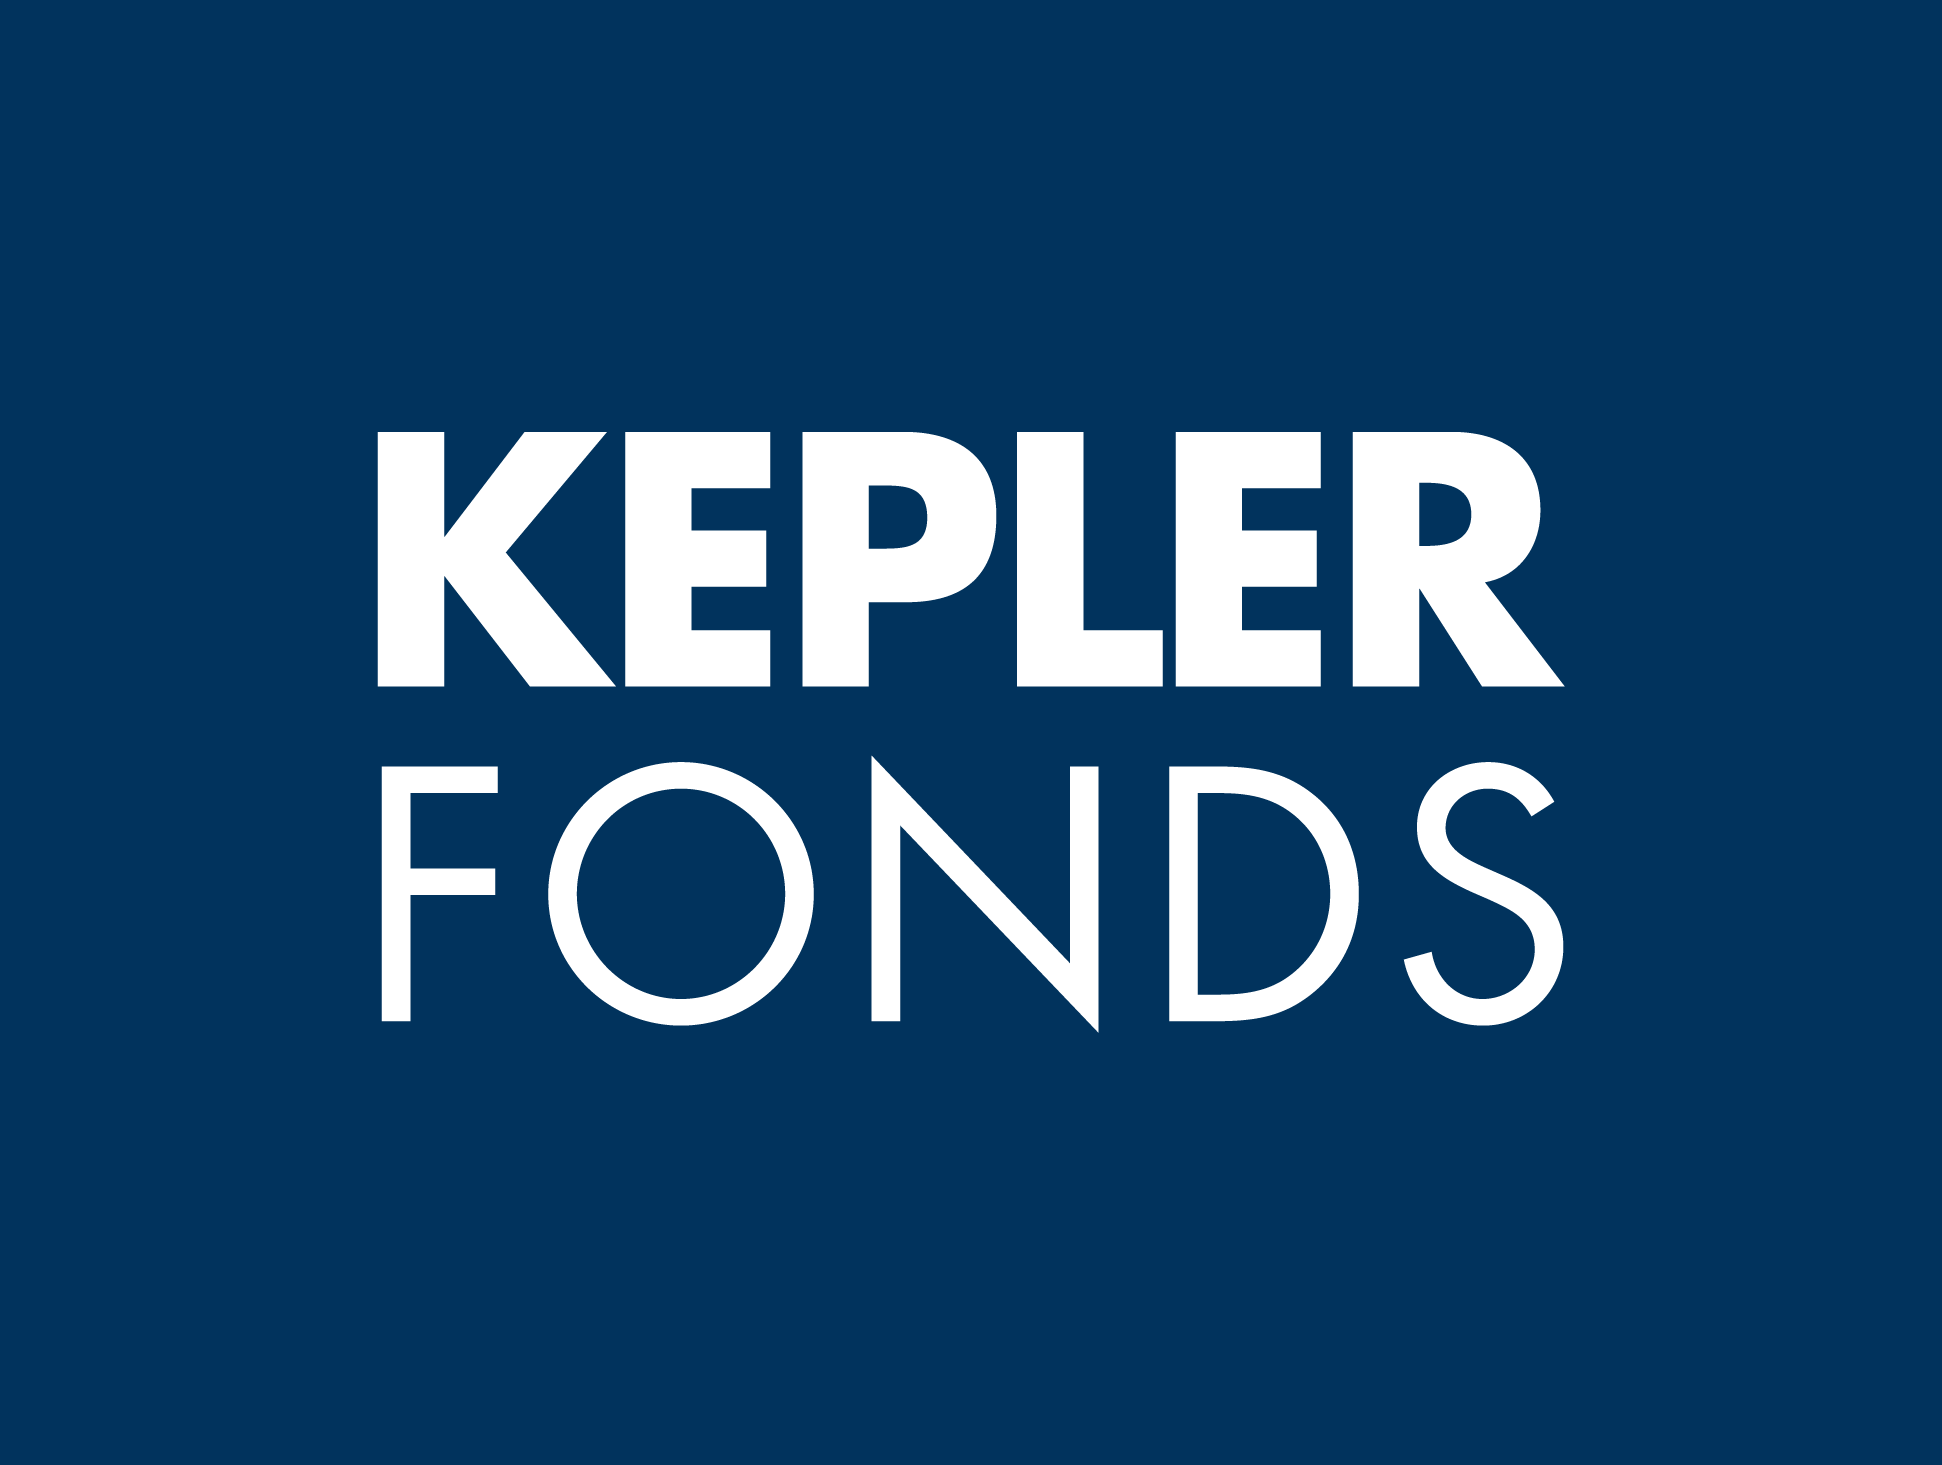 Kepler Fonds KAG